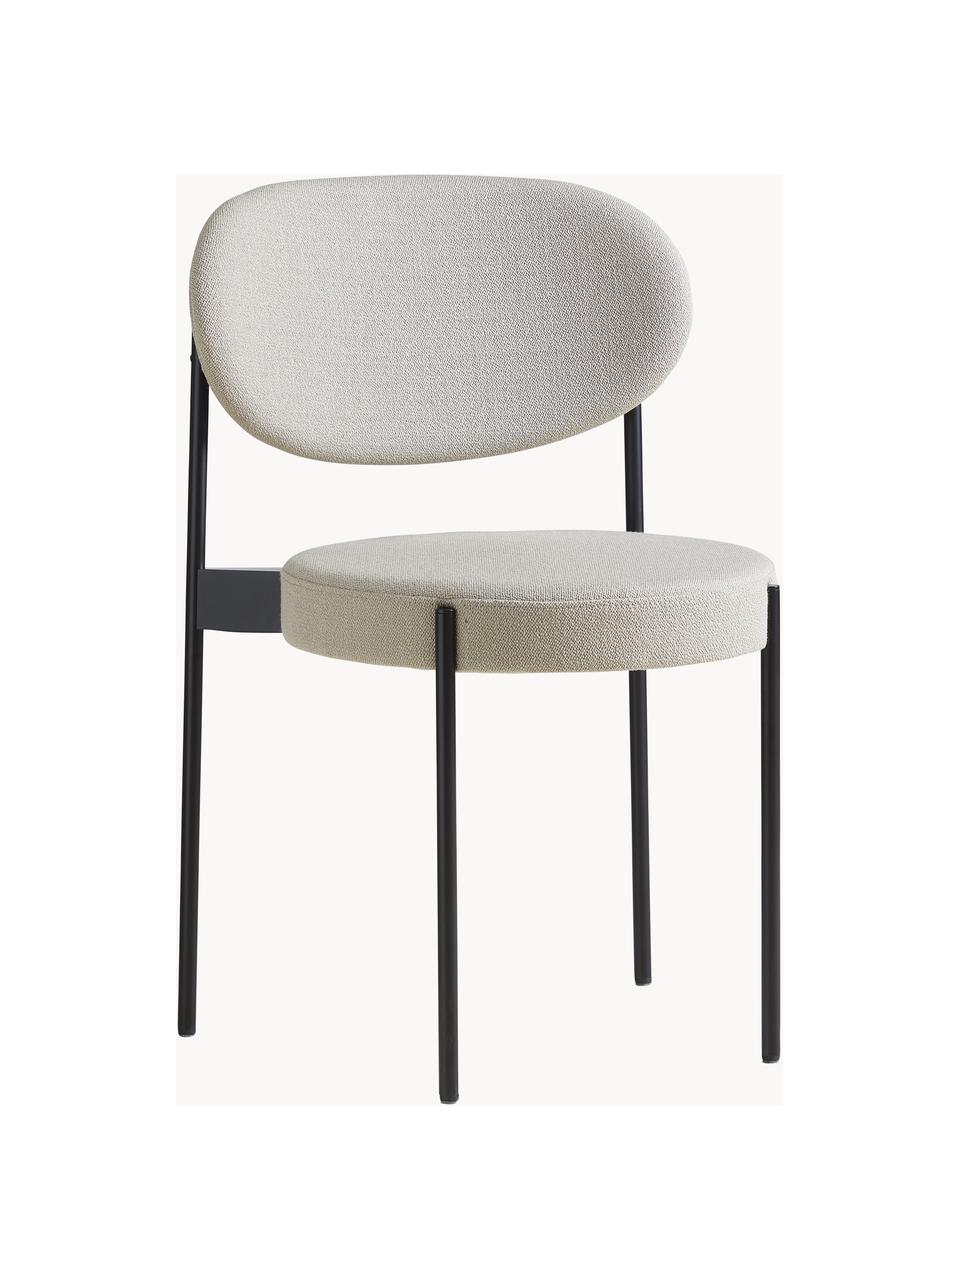 Gestoffeerde stoel Series 430 van wolstof, Bekleding: 94% wol, 6% nylon, Frame: gecoat metaal, Wol gebroken wit, zwart, S 52 x G 54 cm